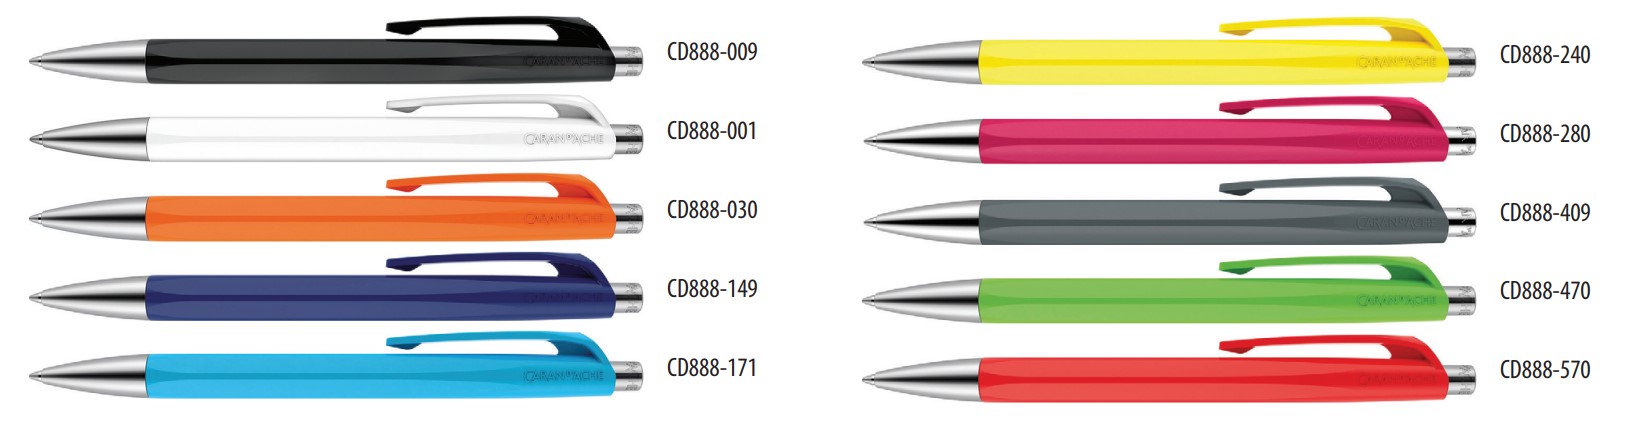 Długopis szwajcarskiej marki Caran d’Ache z kolekcji 888 Infinite